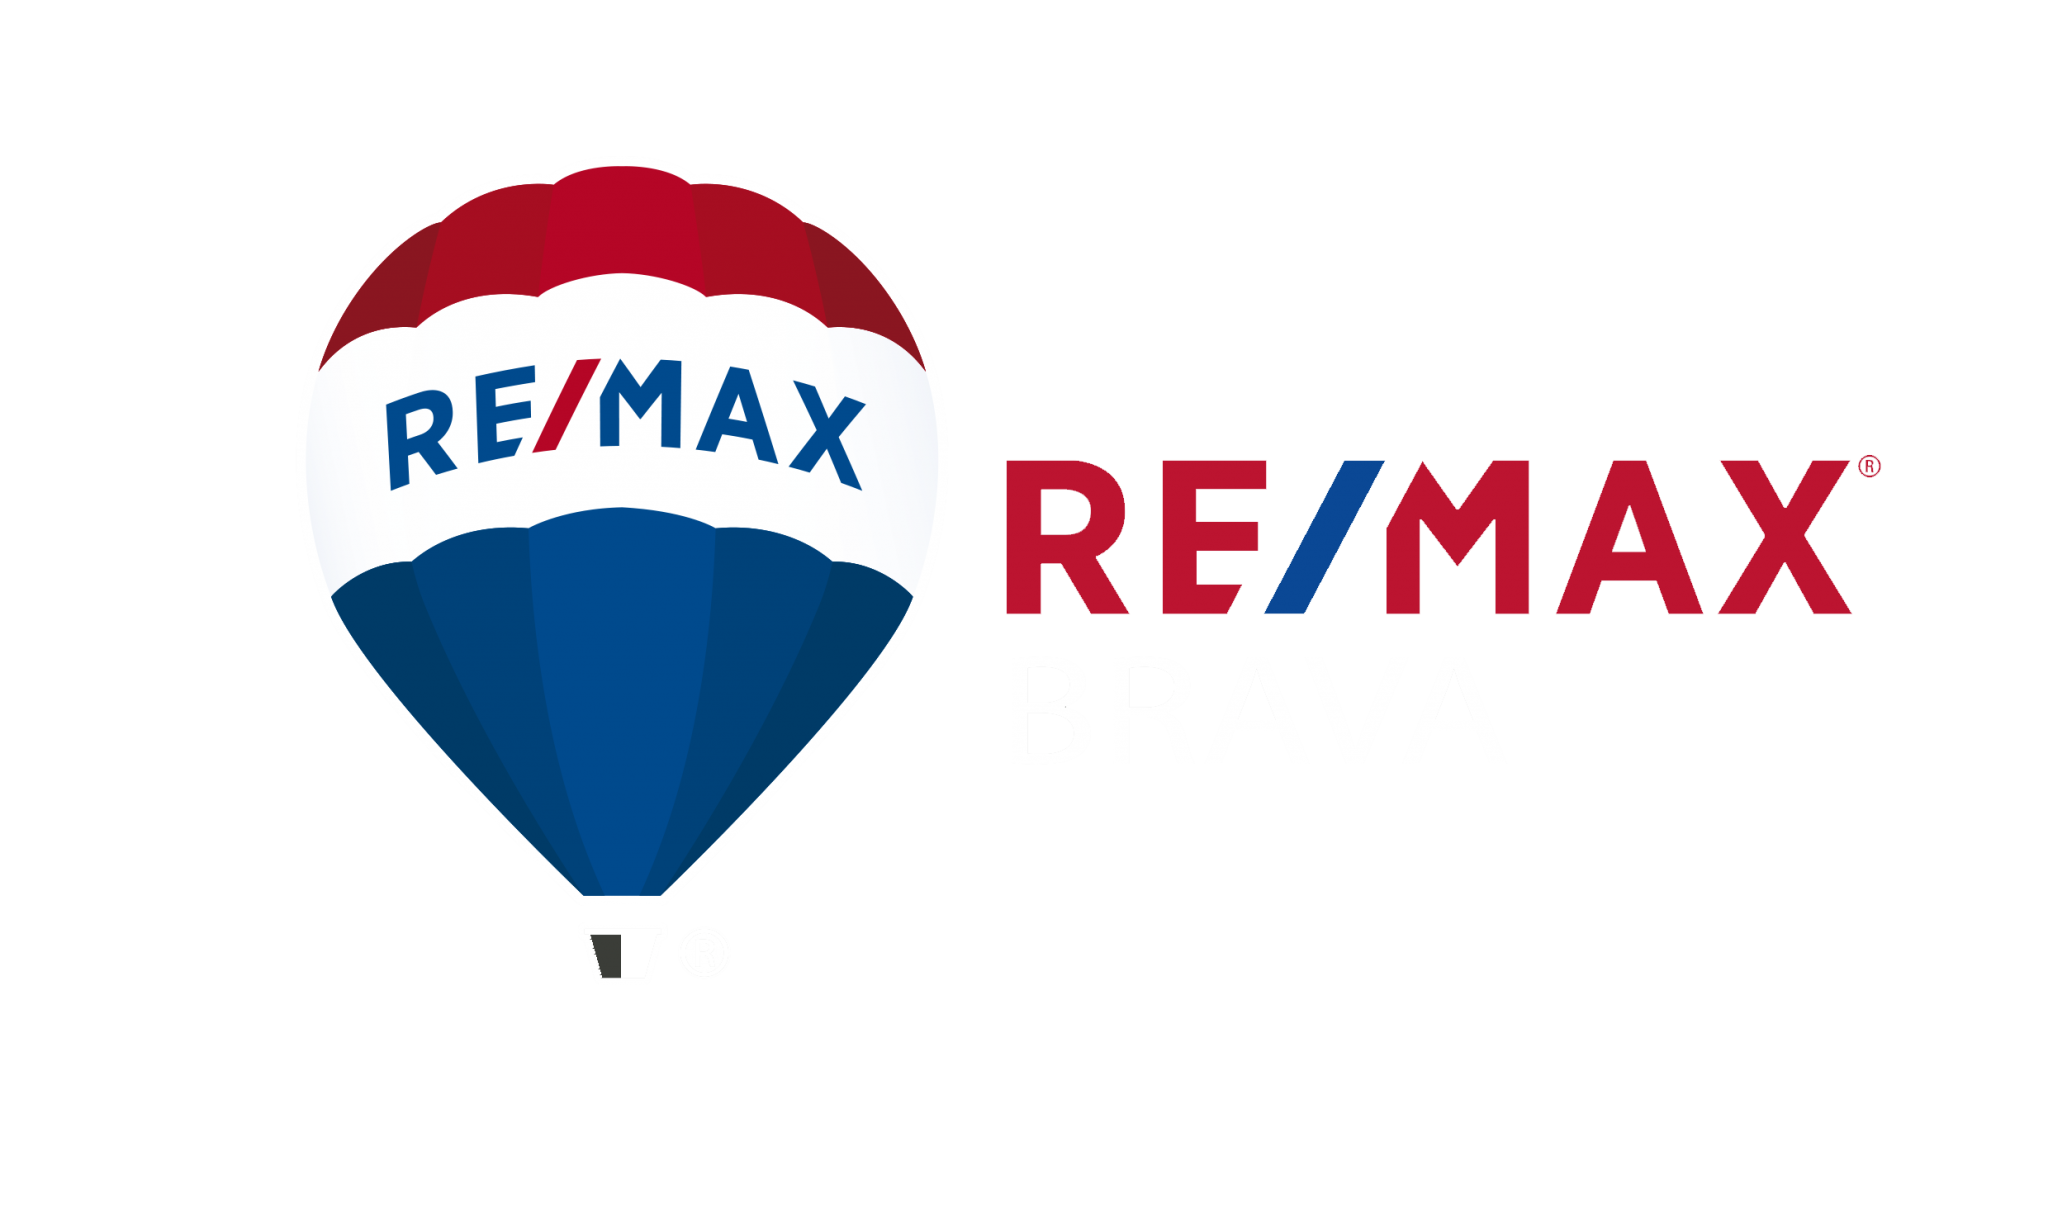 Remax Brava - Remax Brava